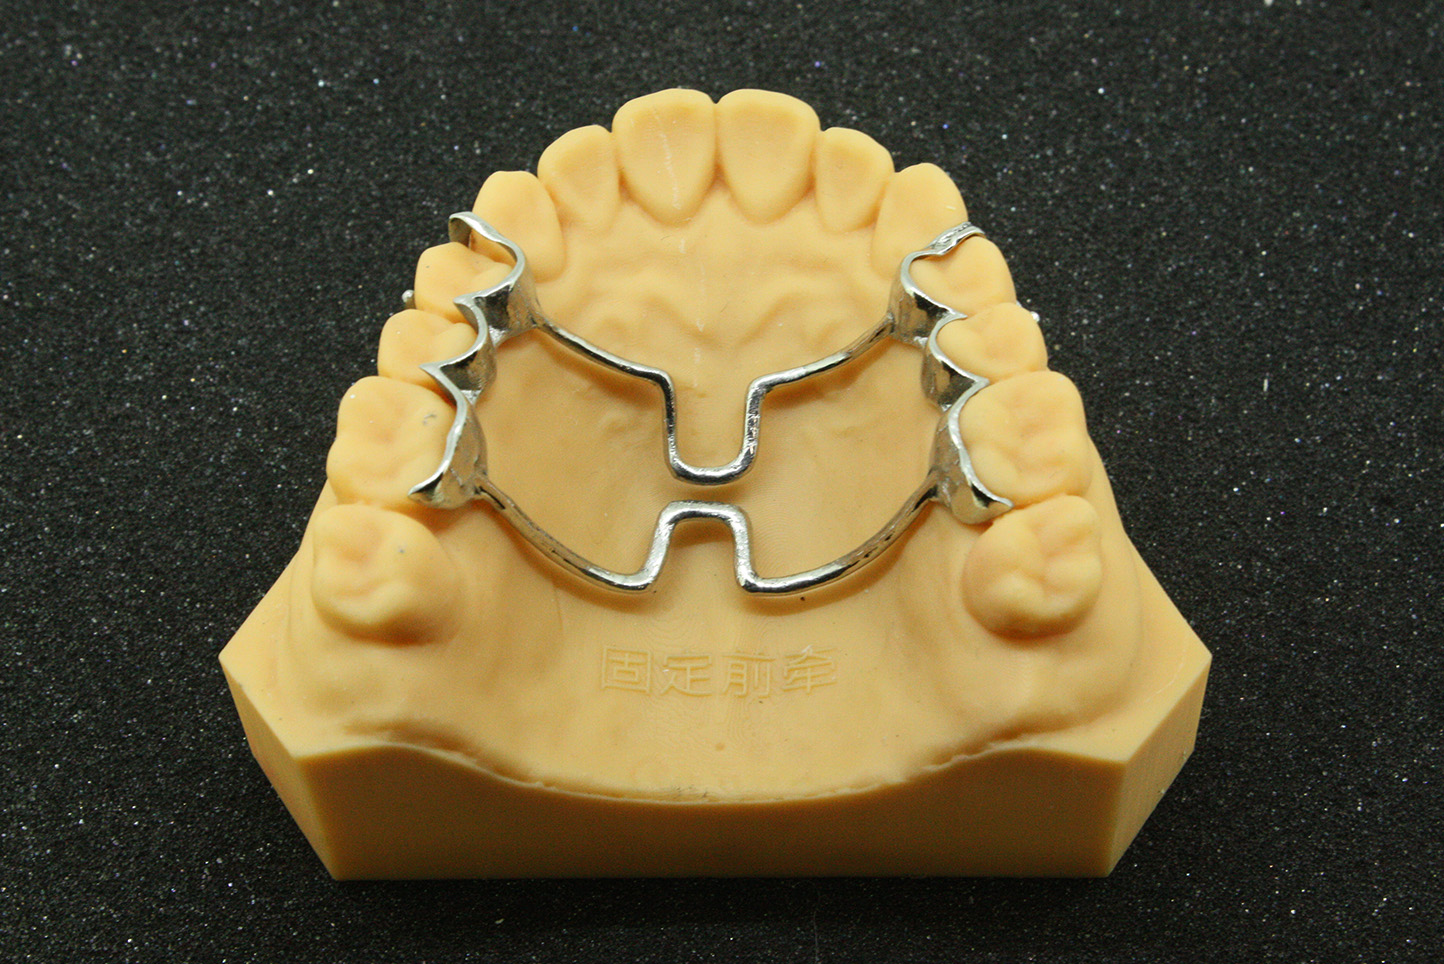 固定矫正器、活动矫正器和功能矫正器的区别和优缺点奉上,牙齿矫正-8682赴韩整形网